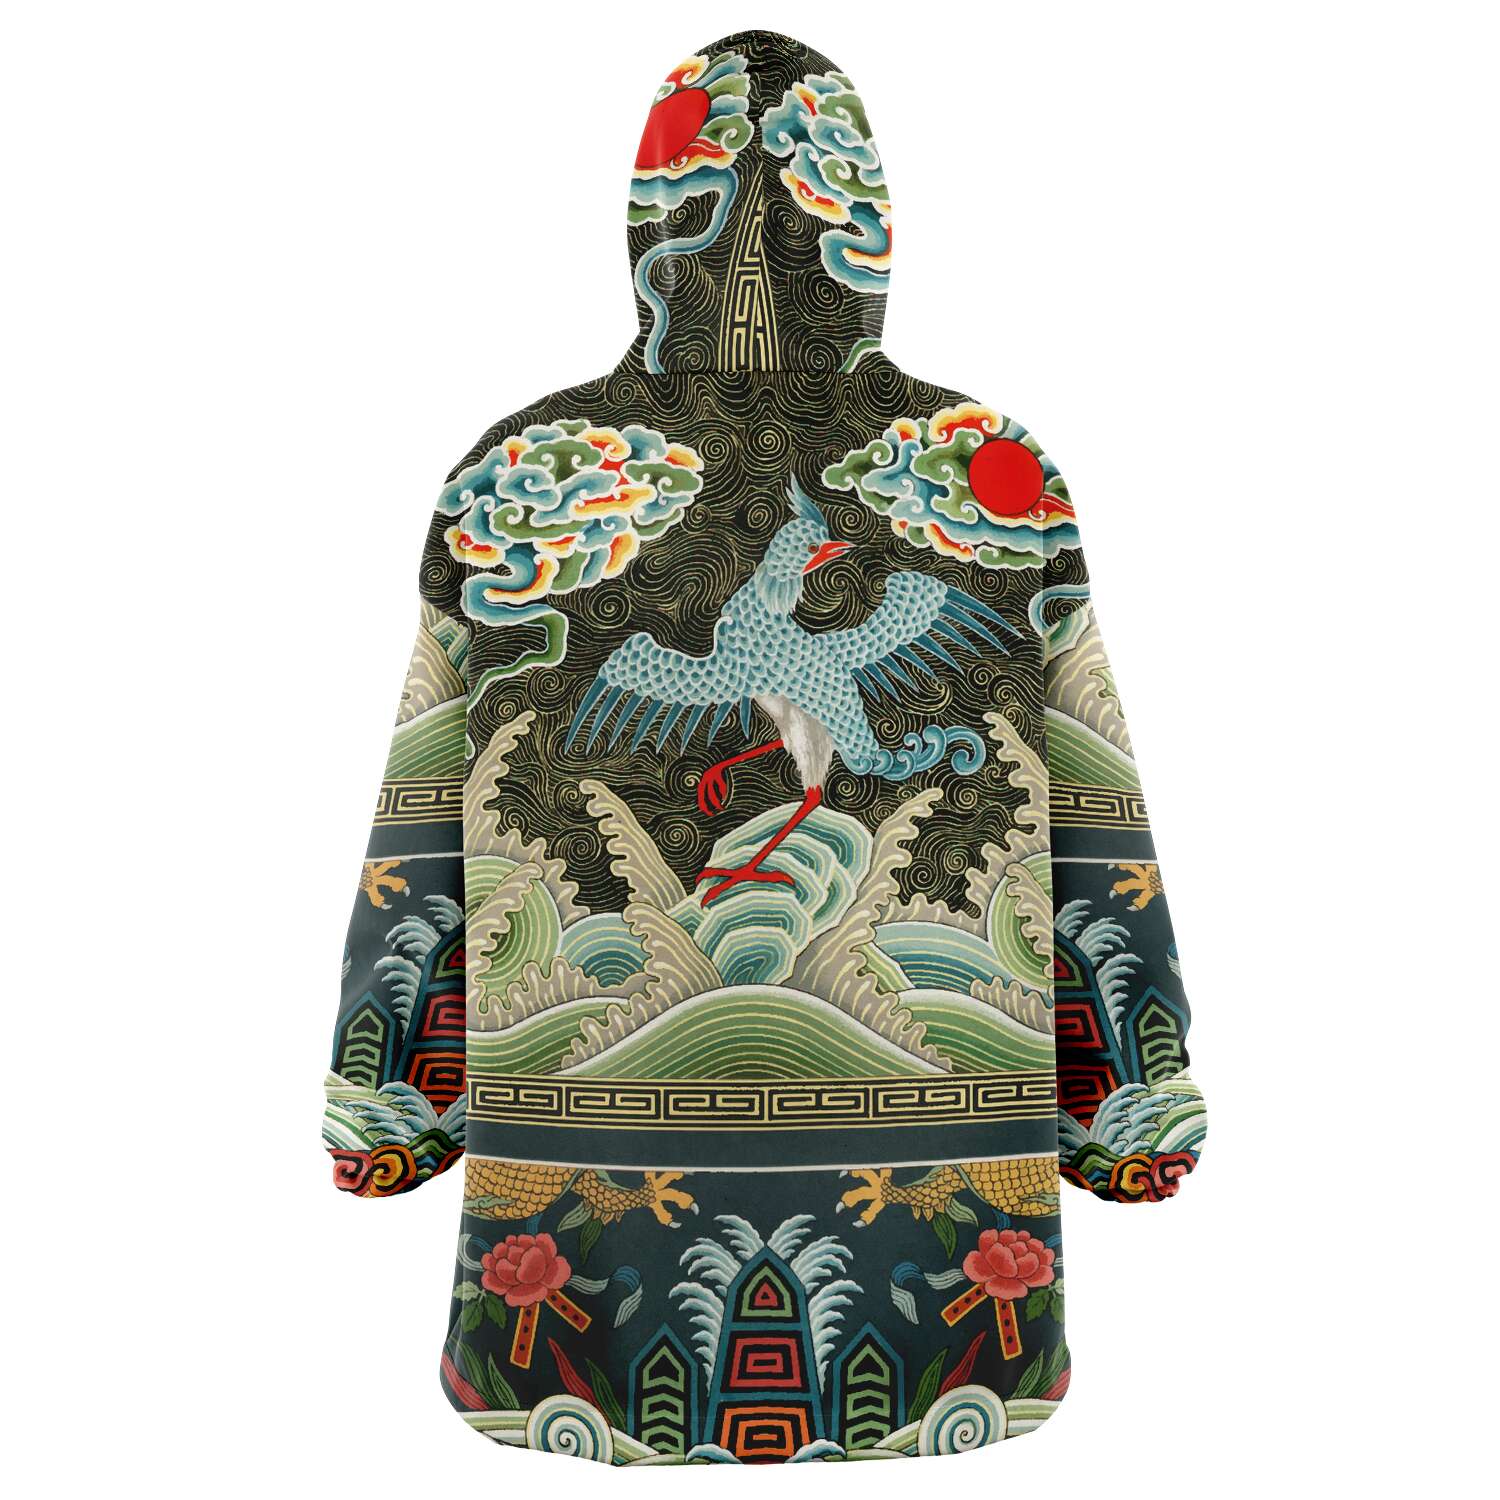 The Art Nouveau Snug Hoodie- Great for Loungewear or Festival wear